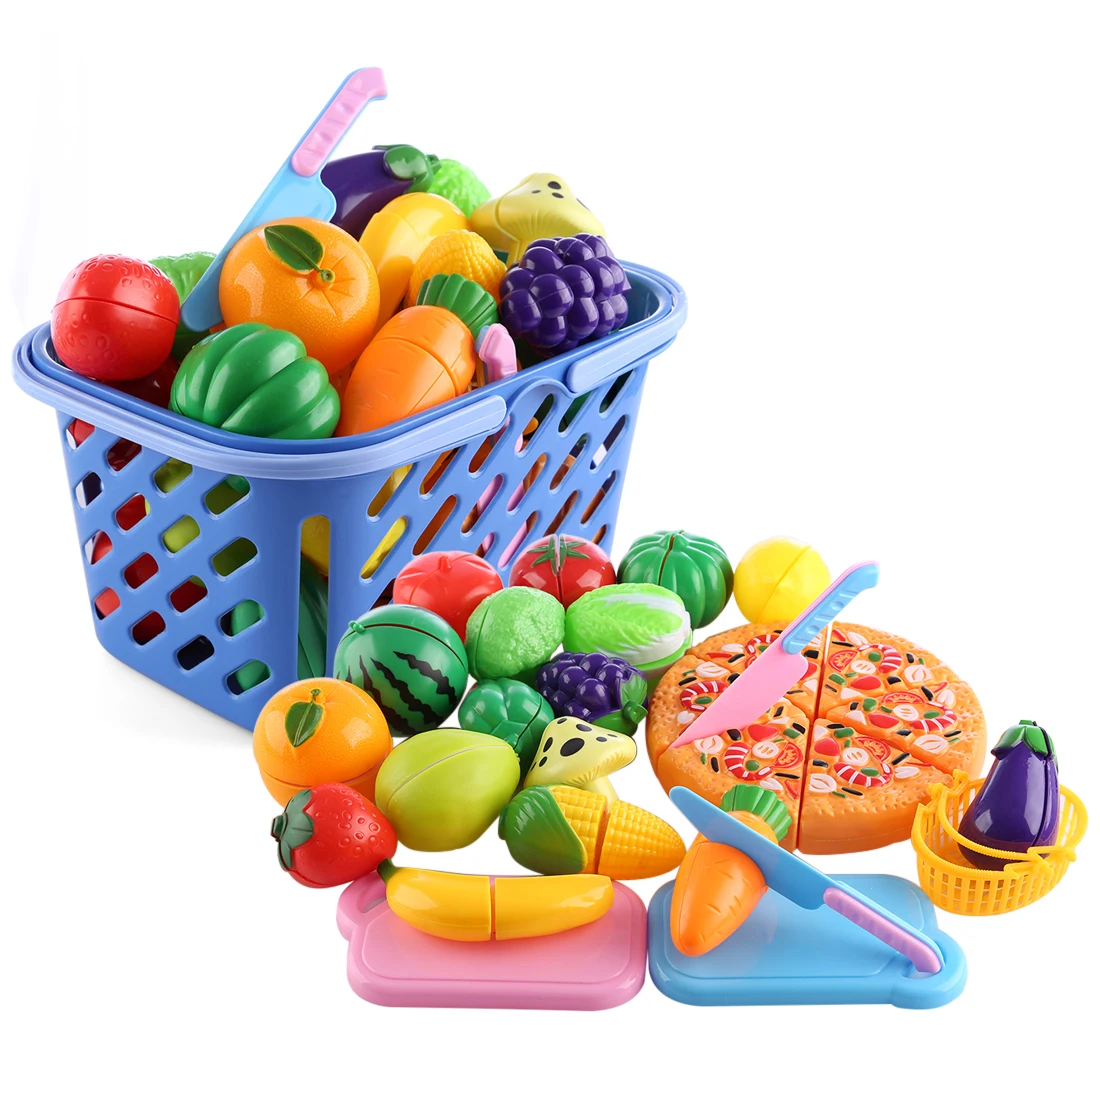 29 шт. Детские Кухонные Игрушки для резки фруктов, овощей, пластиковые ролевые игры, развивающая игрушка для детей, рождественский подарок